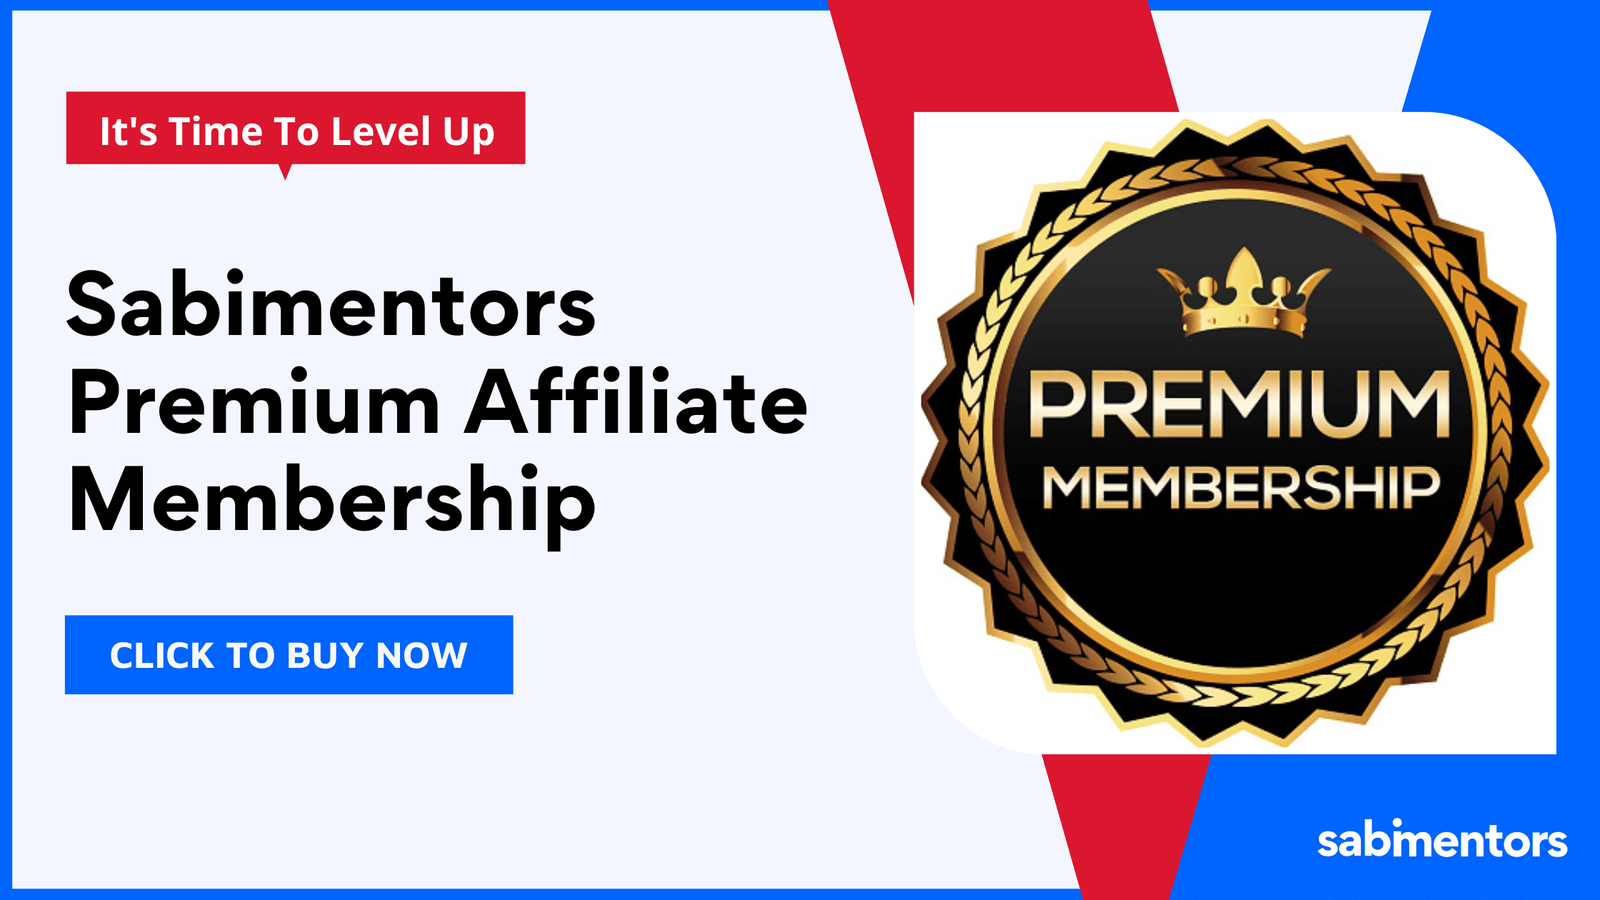 Sabimentors Premium Affiliate Membership – Earn More Money